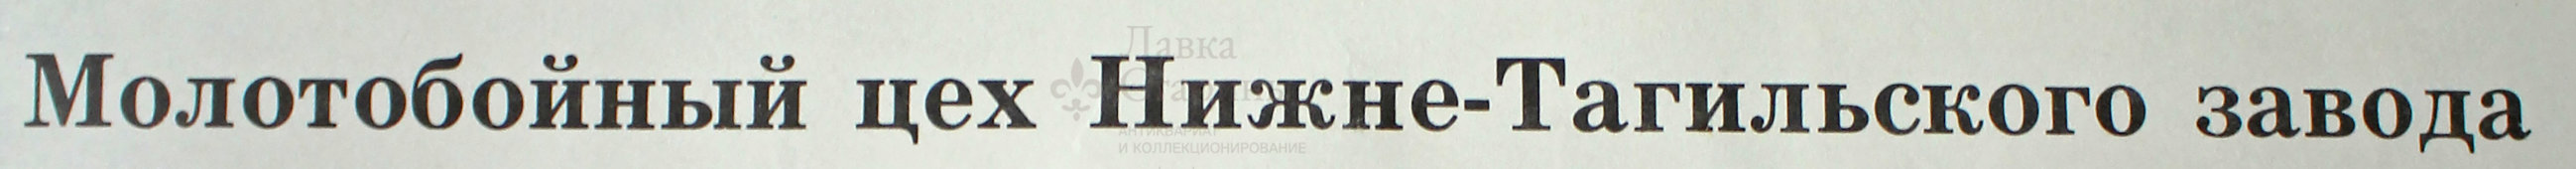 Советский плакат «Молотобойный цех Нижне-Тагильского завода»